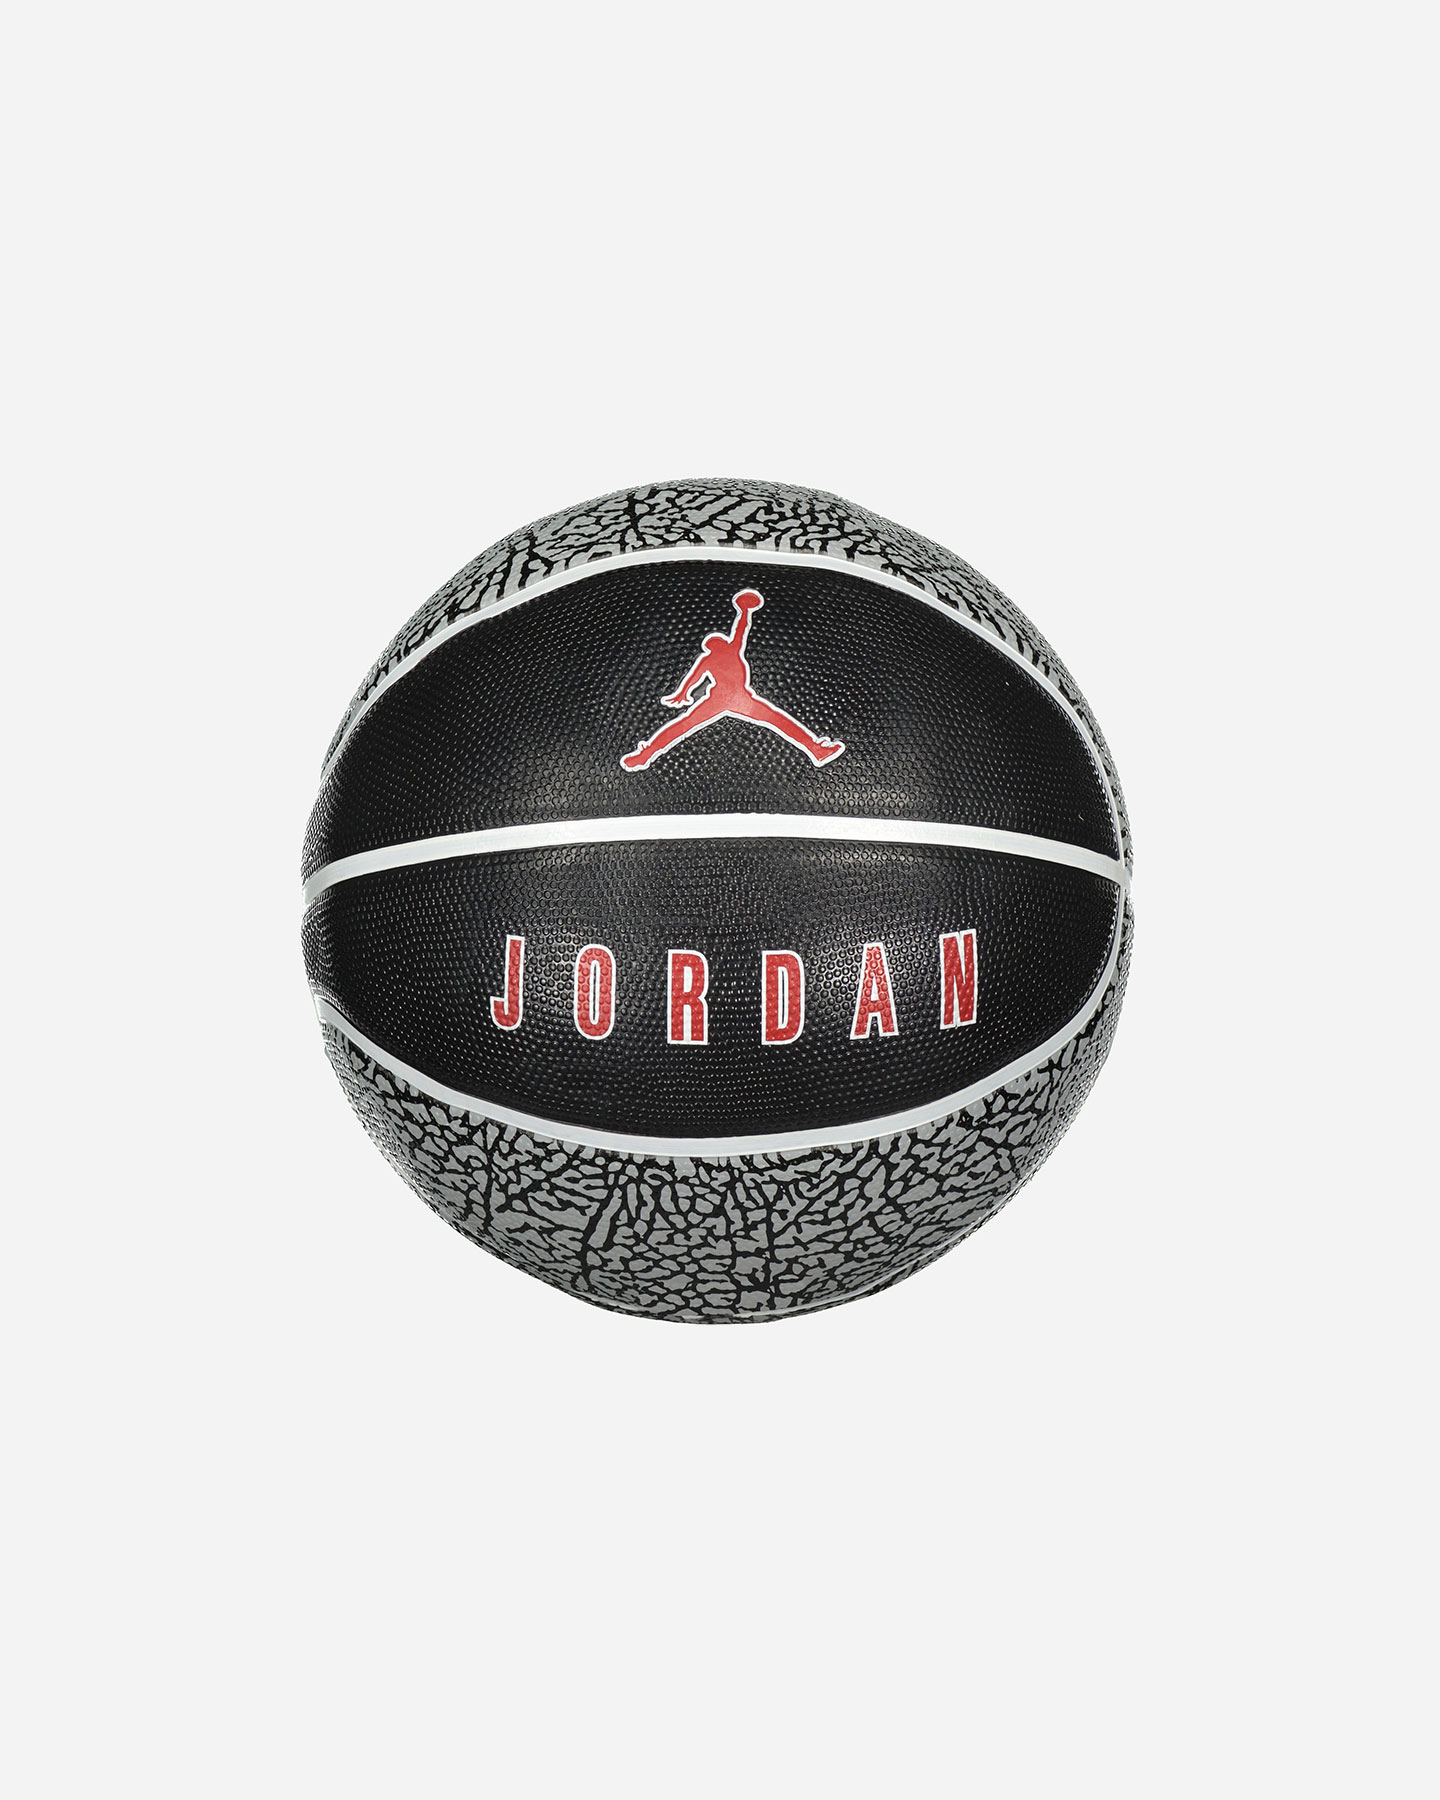 Image of Nike Jordan Playground 8p - Pallone Basket